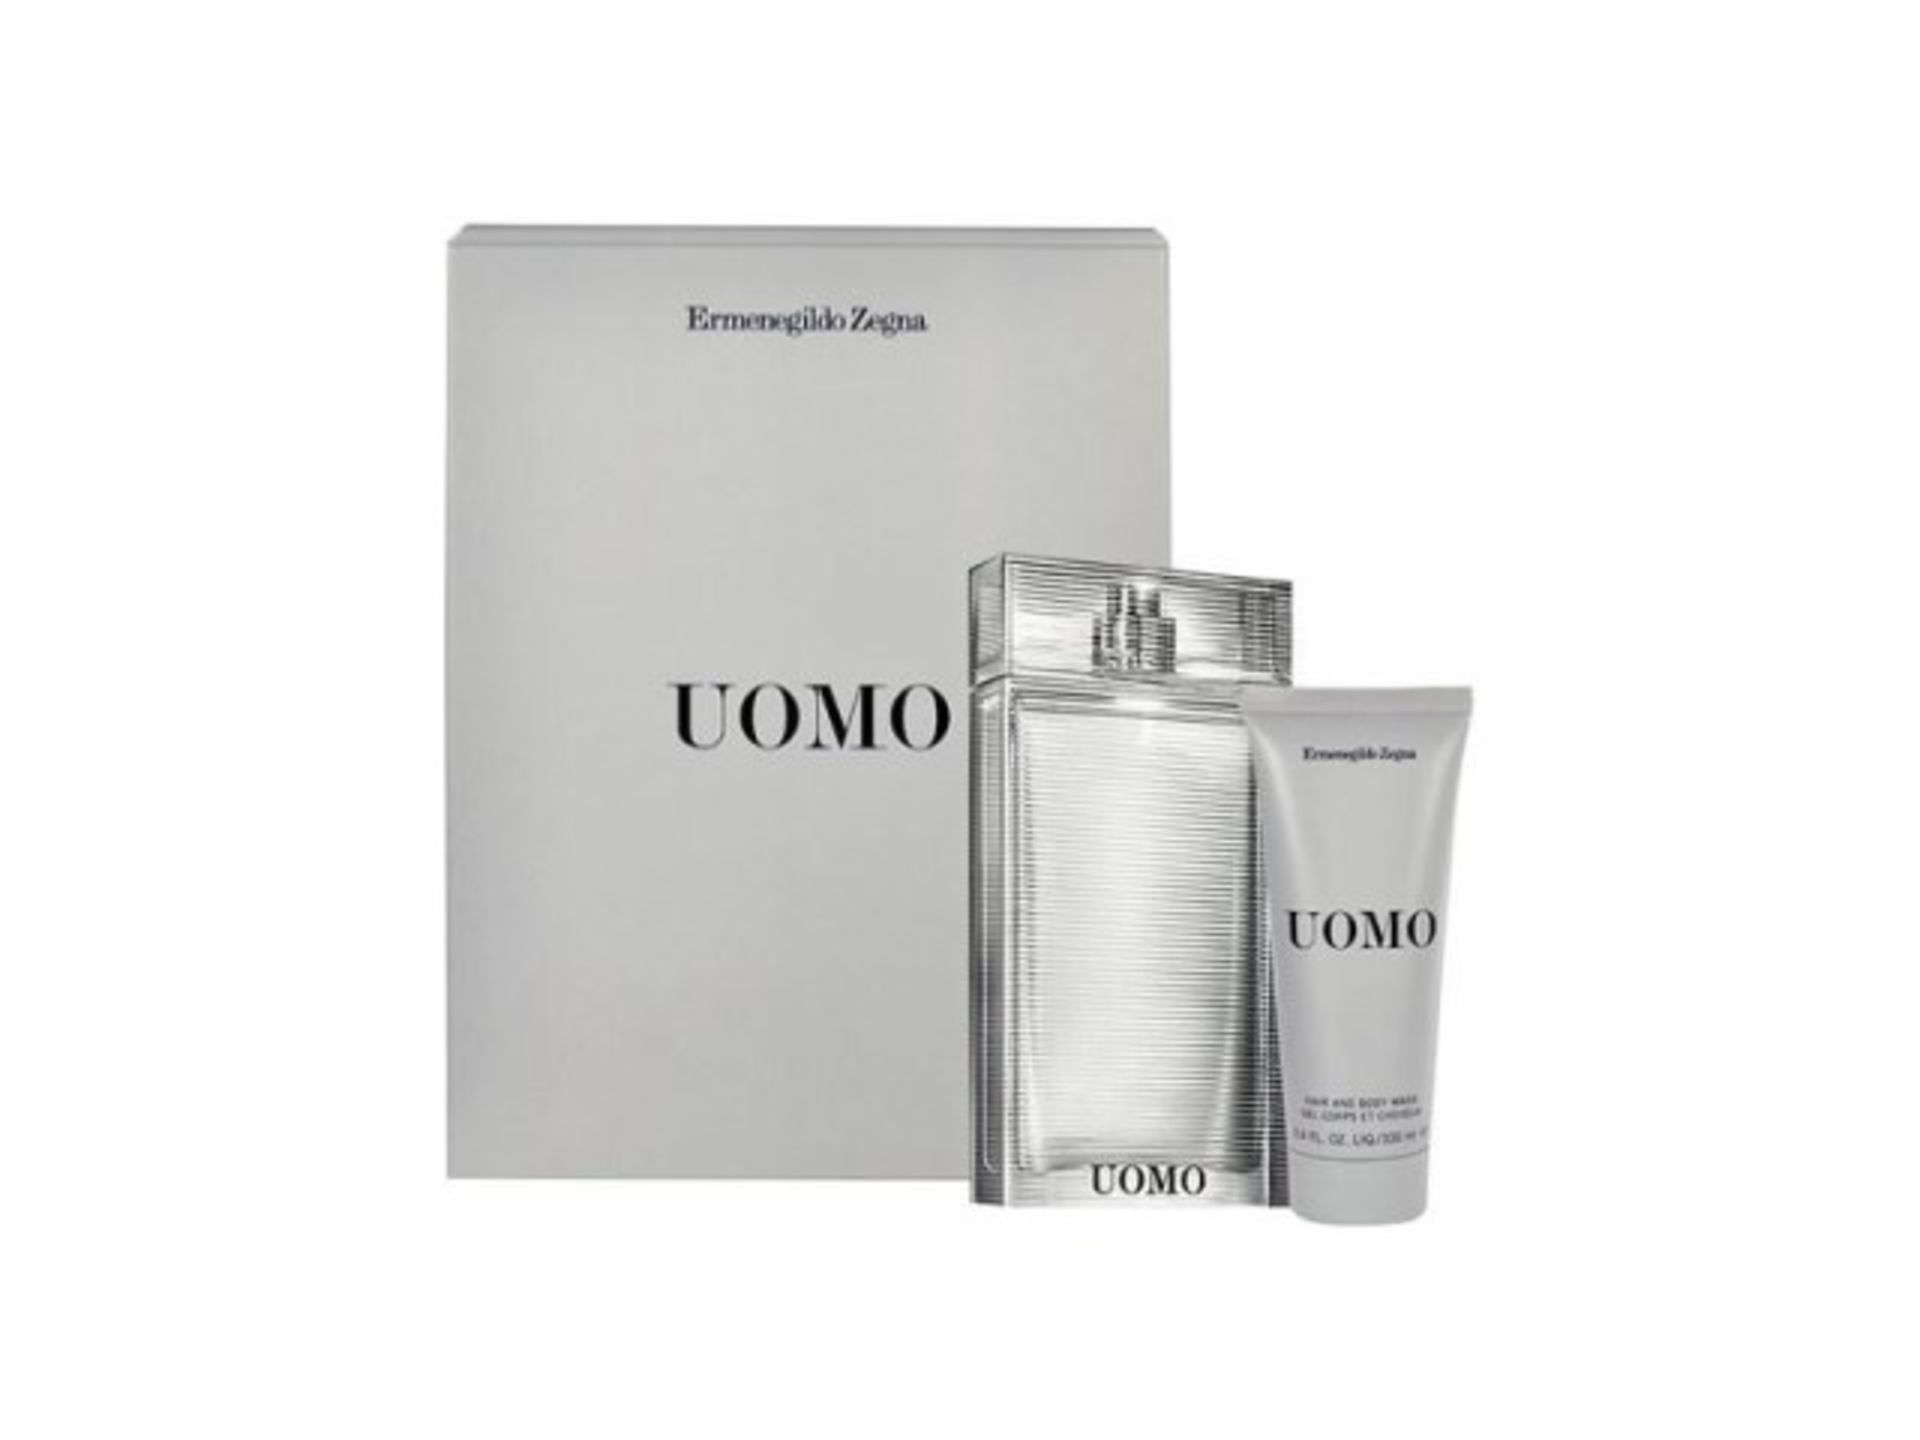 V Brand New Ermenegildo Zegna - UOMO - Mens EDT/hair bodywash gift set RRP £46.50